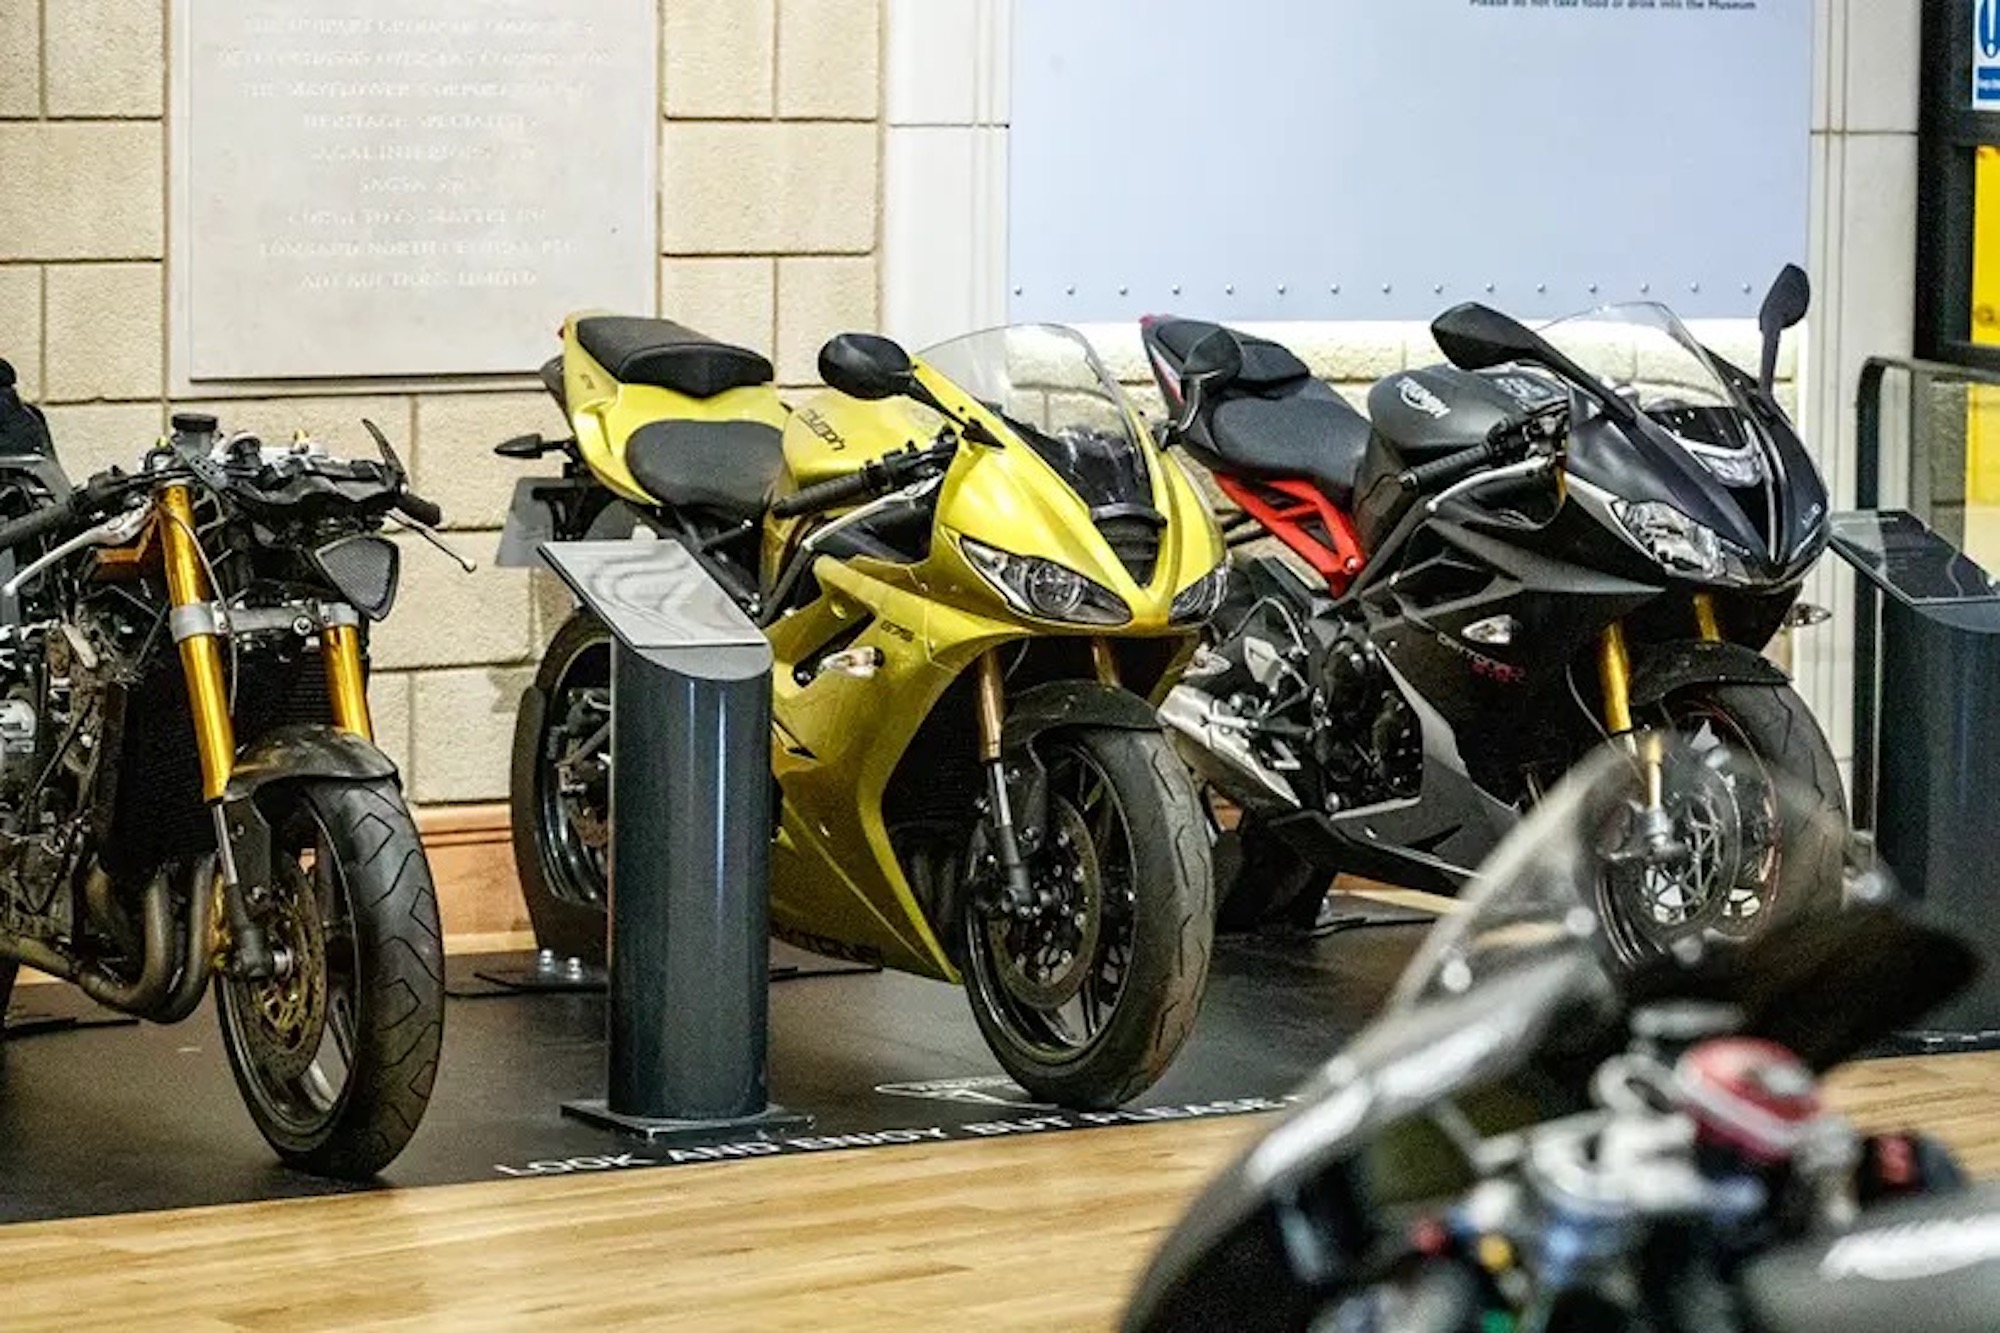 “传奇的代托纳摩托车”，这是英国汽车博物馆第一次专门的摩托车展览。媒体来源:MCN。